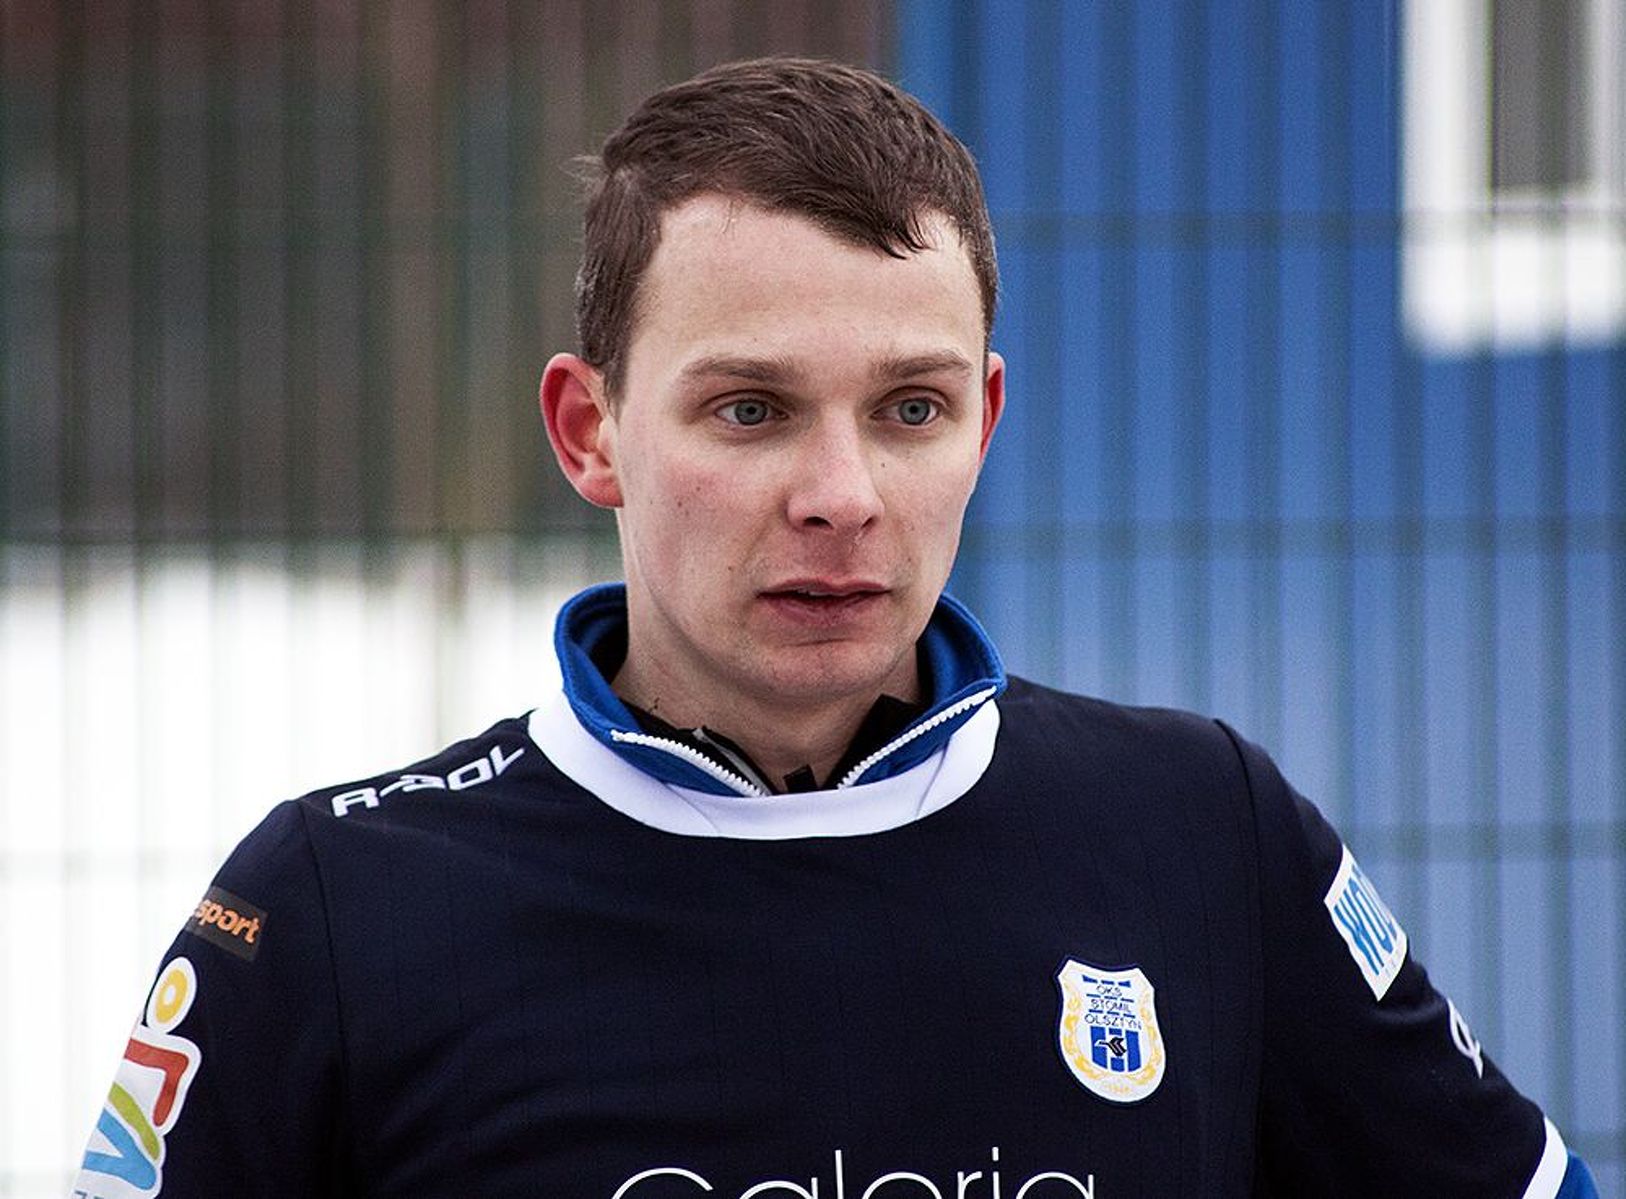 Mateusz Różowicz strzelił 6 bramek w sparingu. Fot. Artur Szczepański